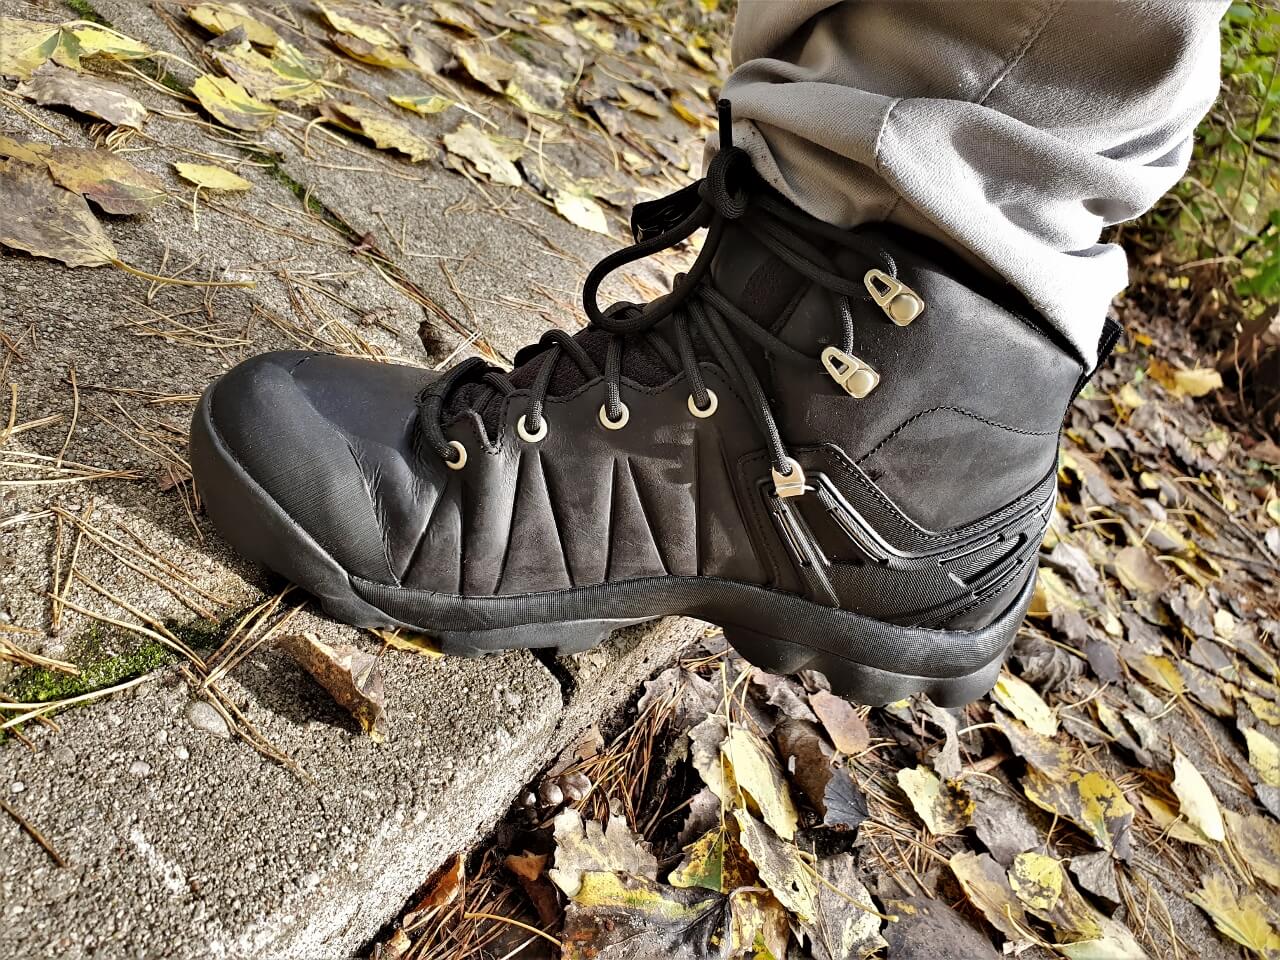 Trekkingowe buty KEEN Venture Leather Mid Wp gwarantuje pelna stabilizacje kostki nawet w trudnym terenie